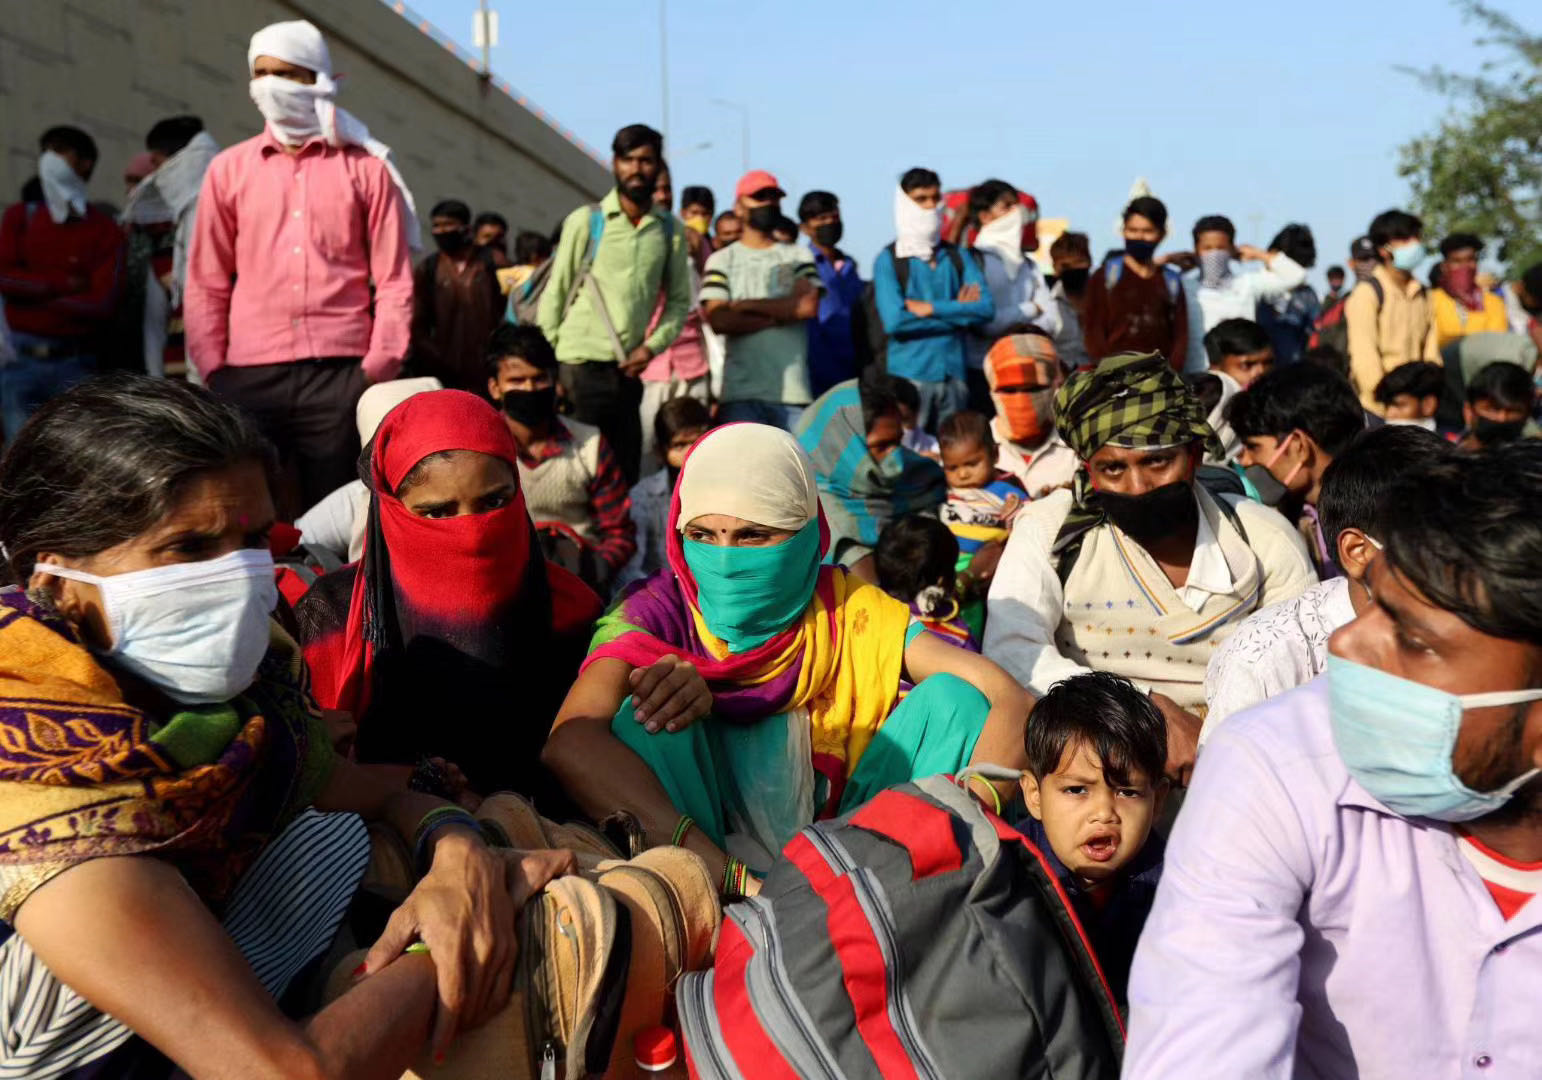 印度全国封锁引劳工恐慌 内政部要求保障迁徙工人福利